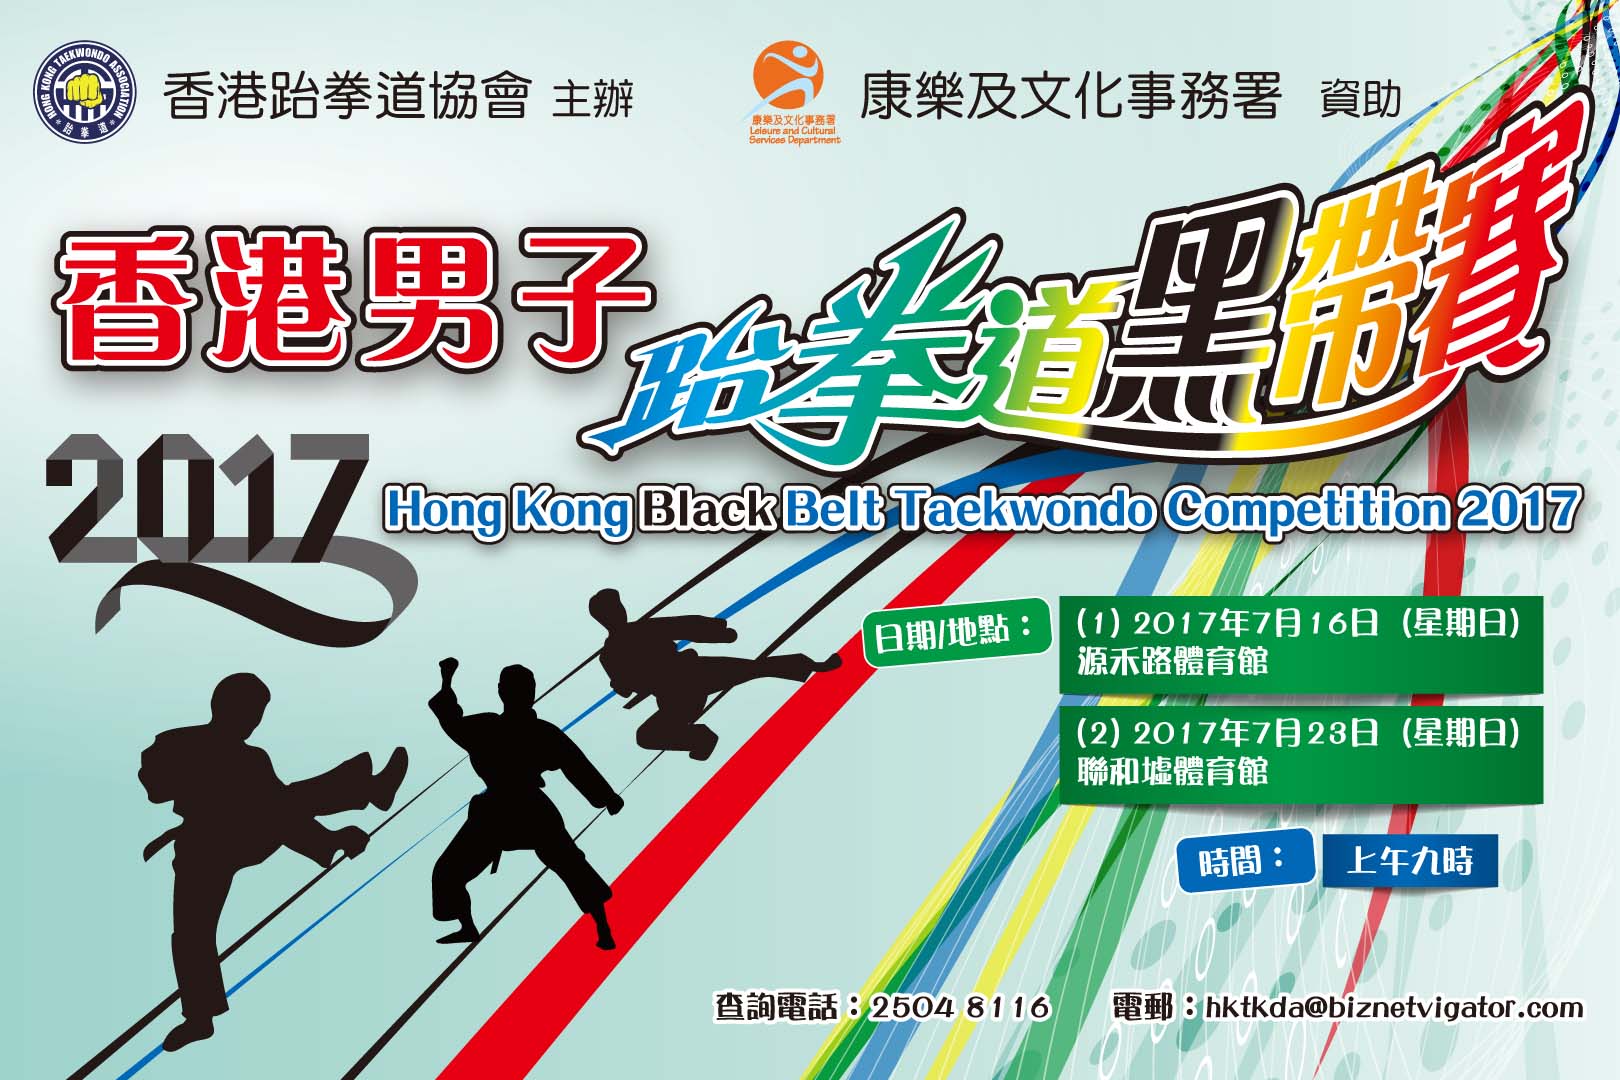 香港男子跆拳道黑帶賽2017